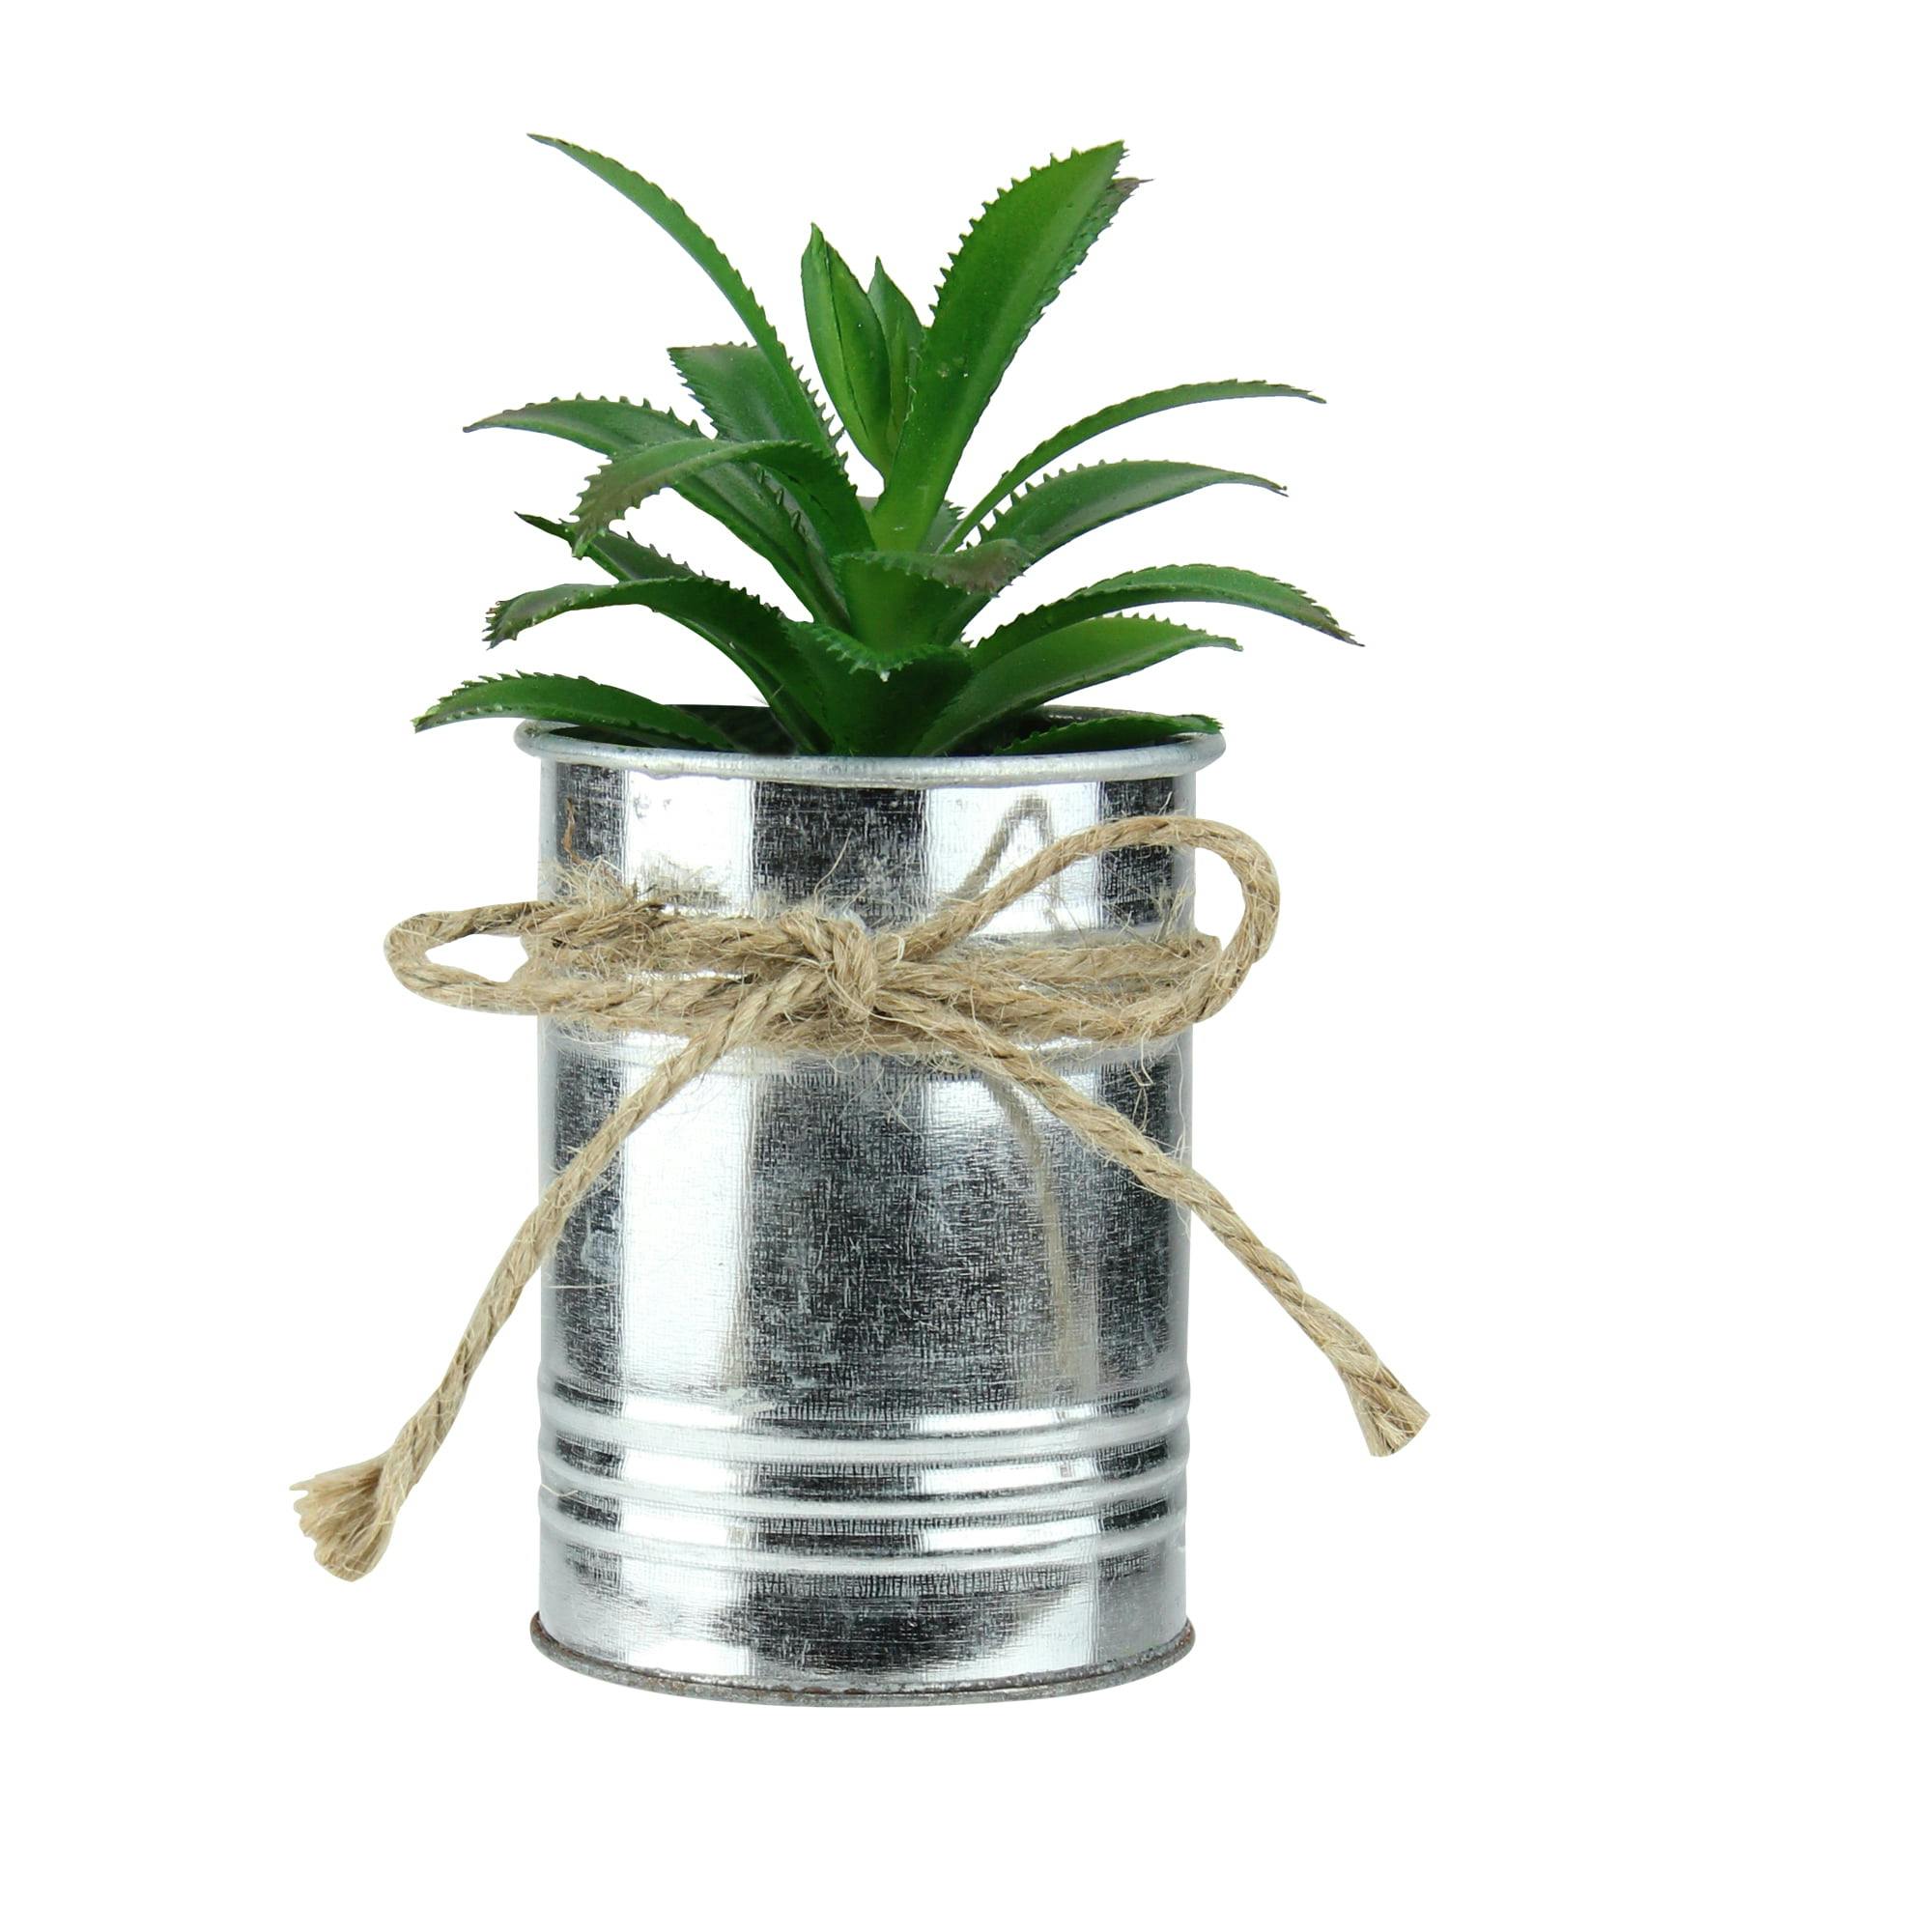 Festive 6" Mini Potted Green Succulent in Silver Tin Planter